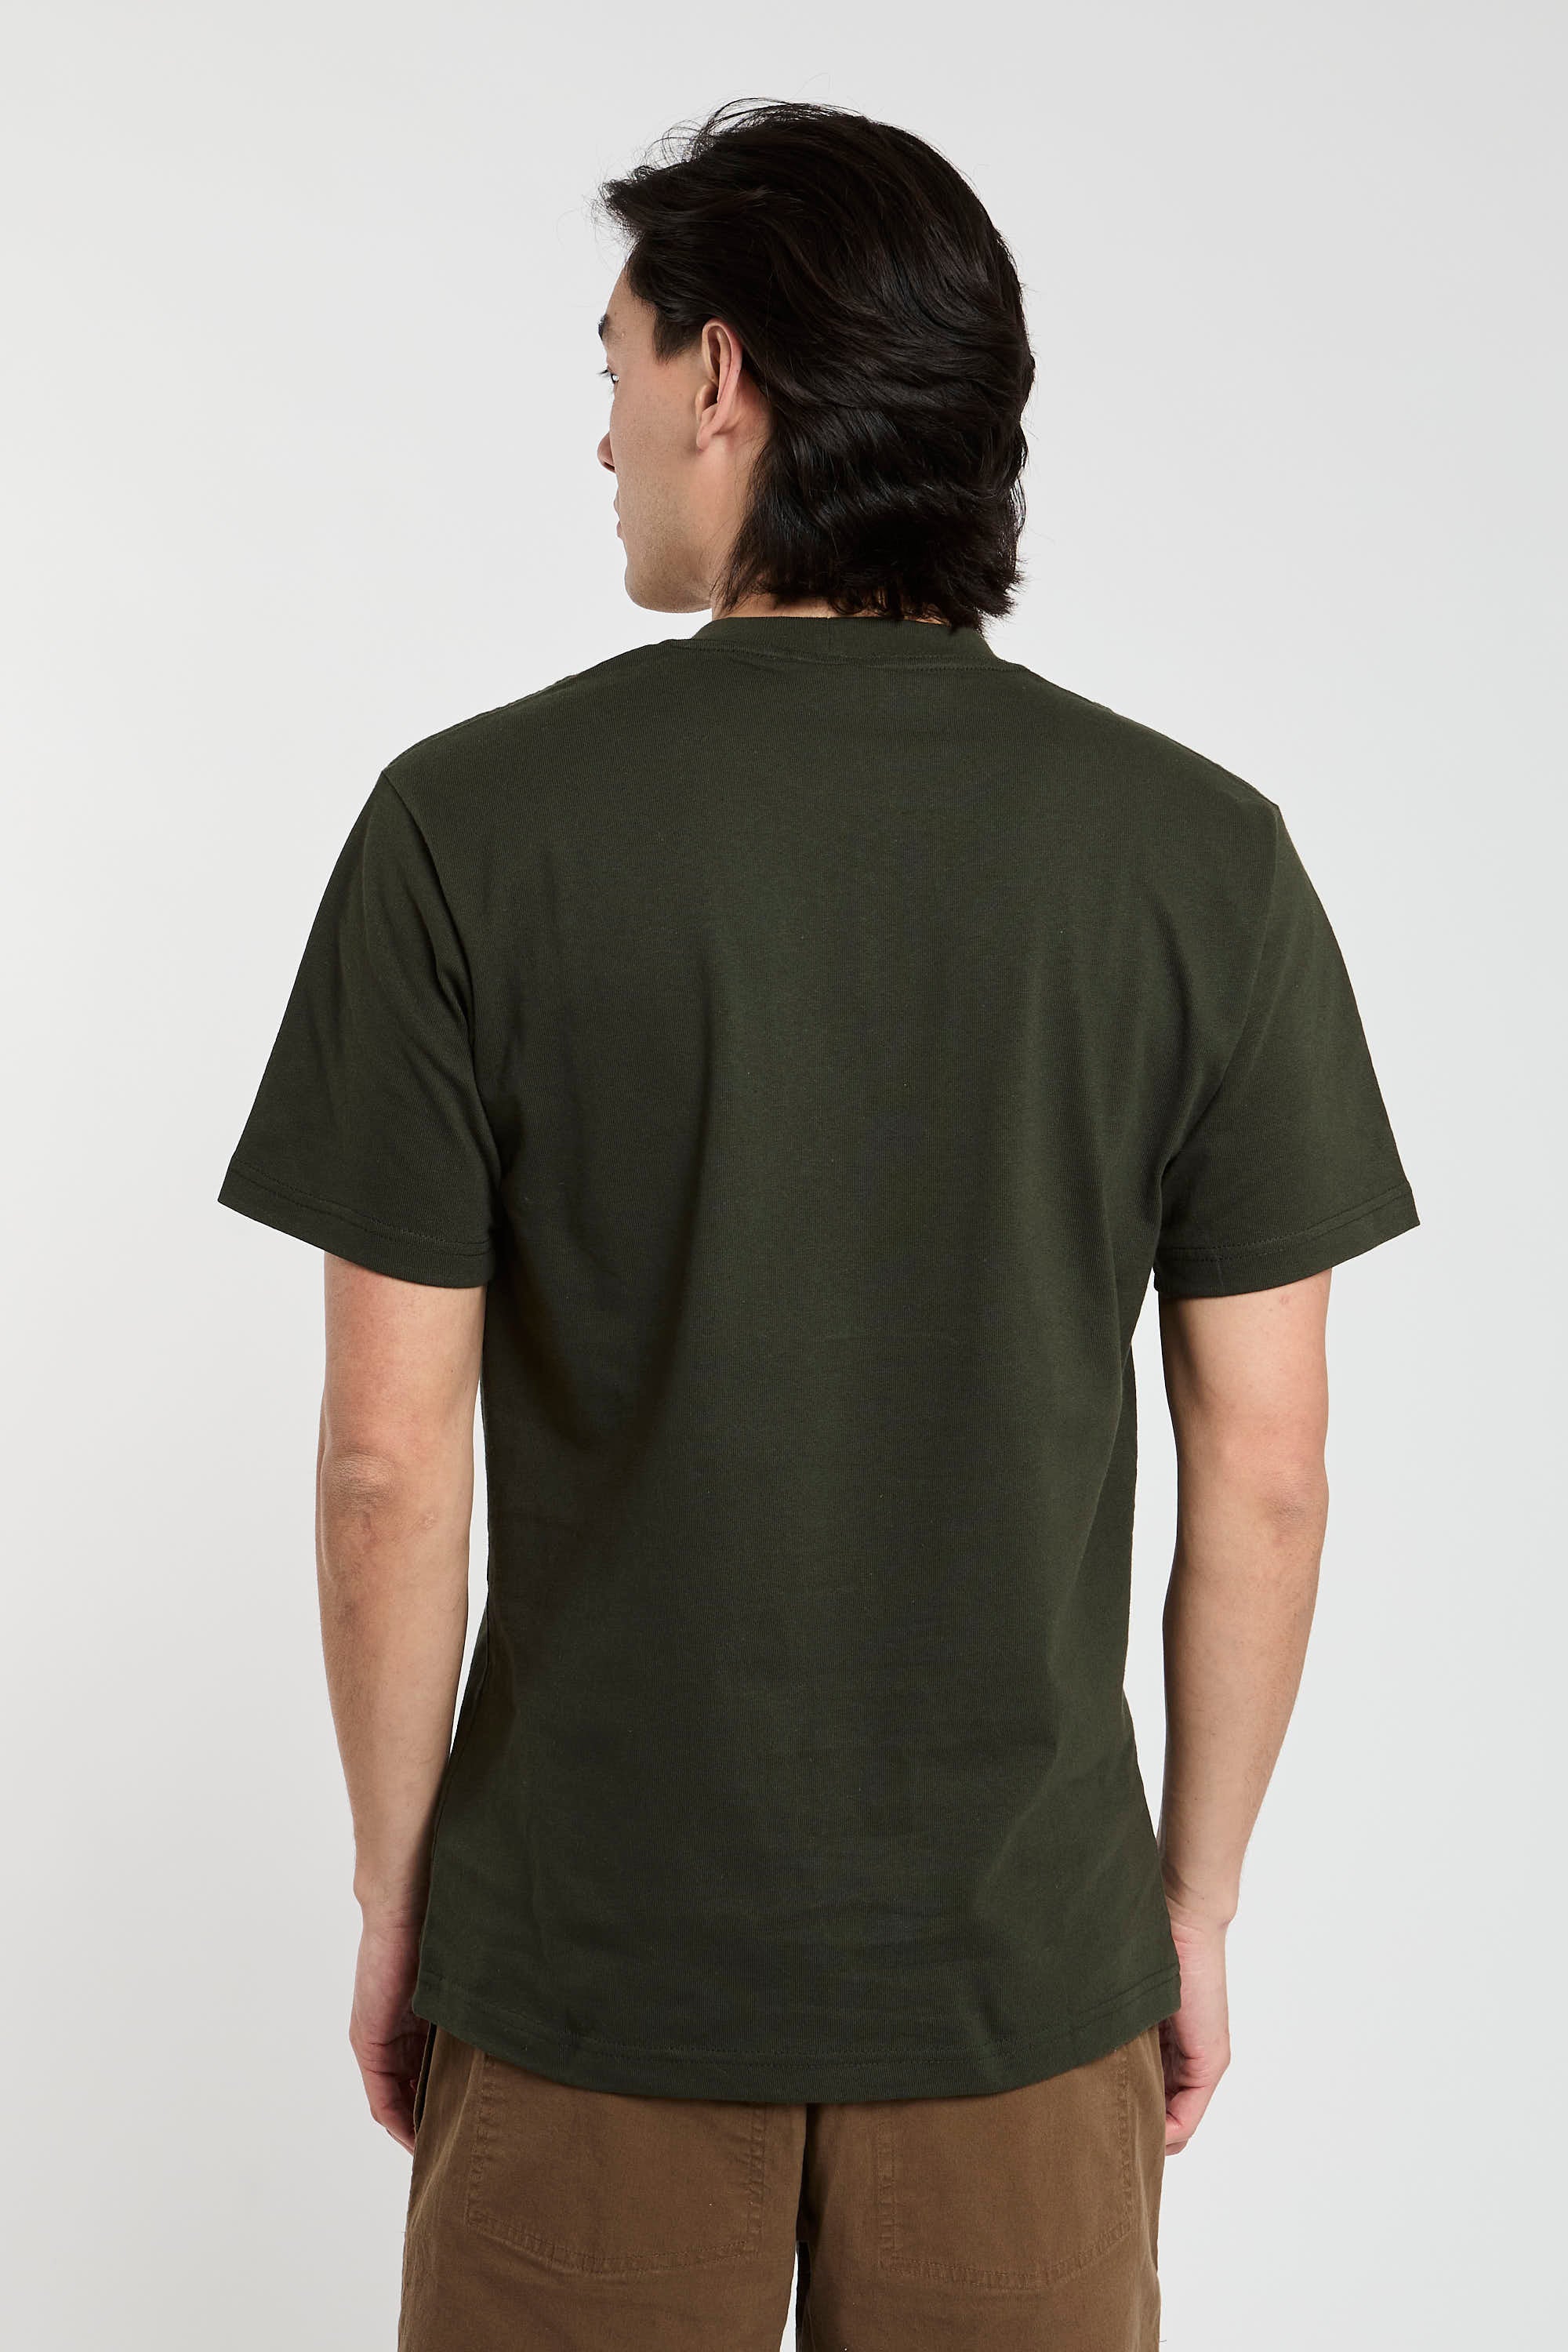 Filson Green Cotton Jersey T-shirt-6